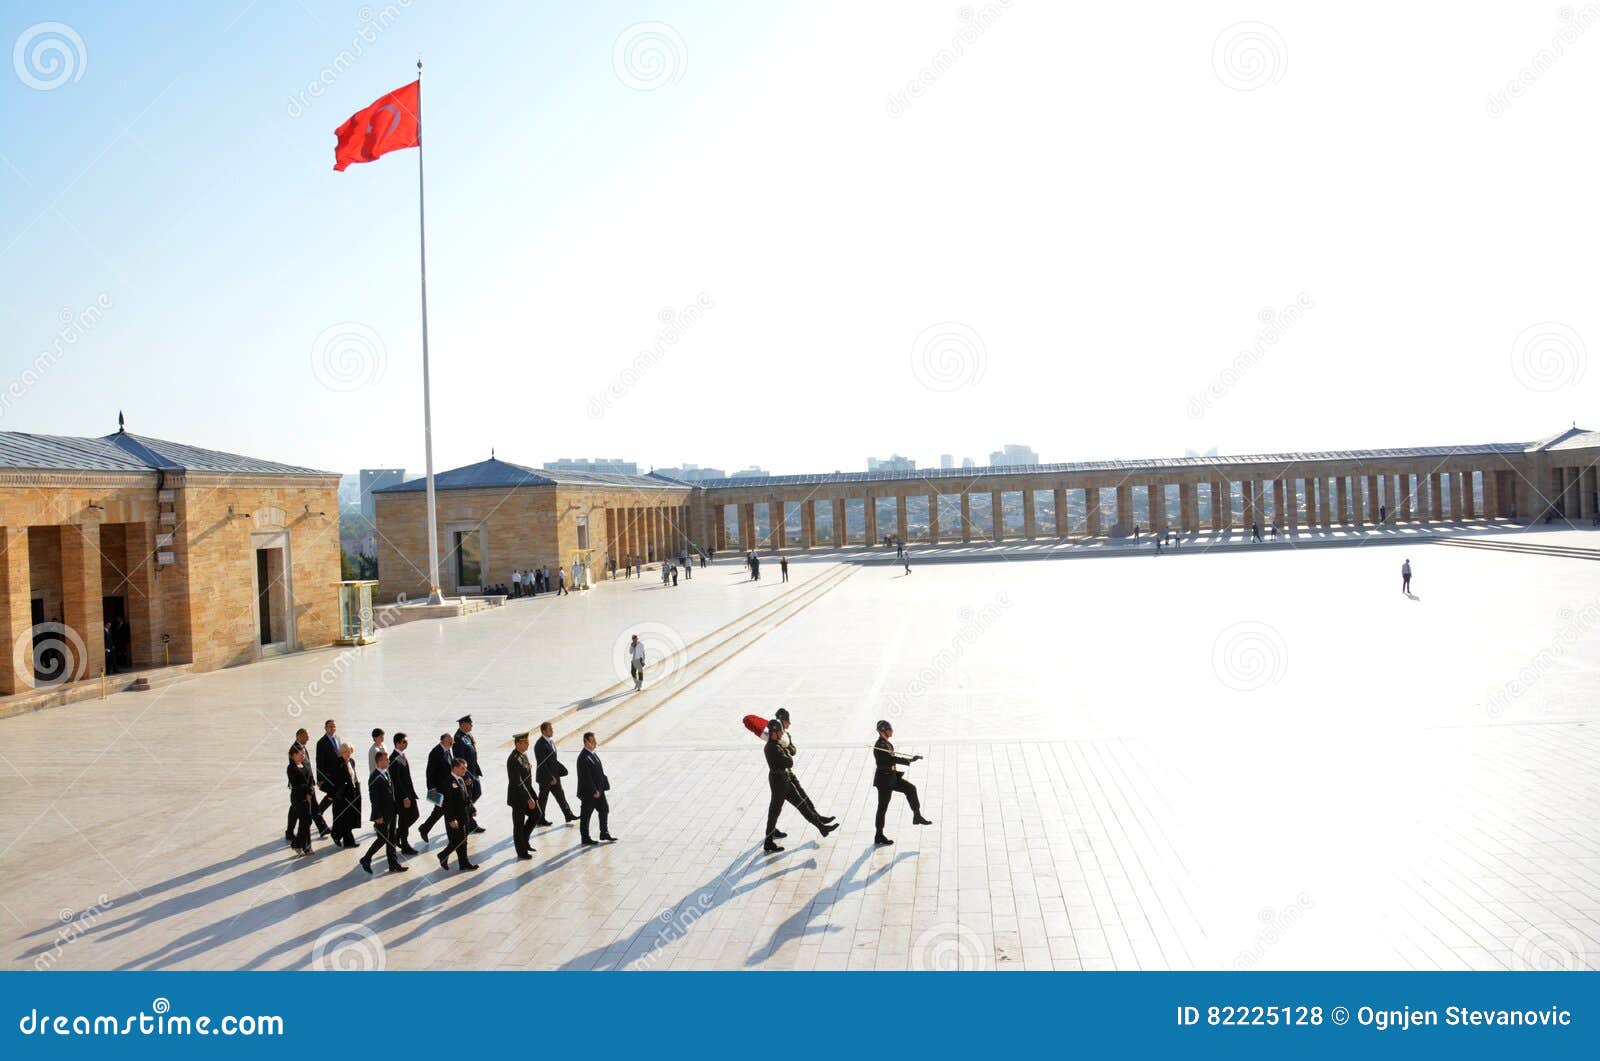 Erewachten Bij Het Ataturk-Mausoleum Redactionele Stock Foto - Image of ...